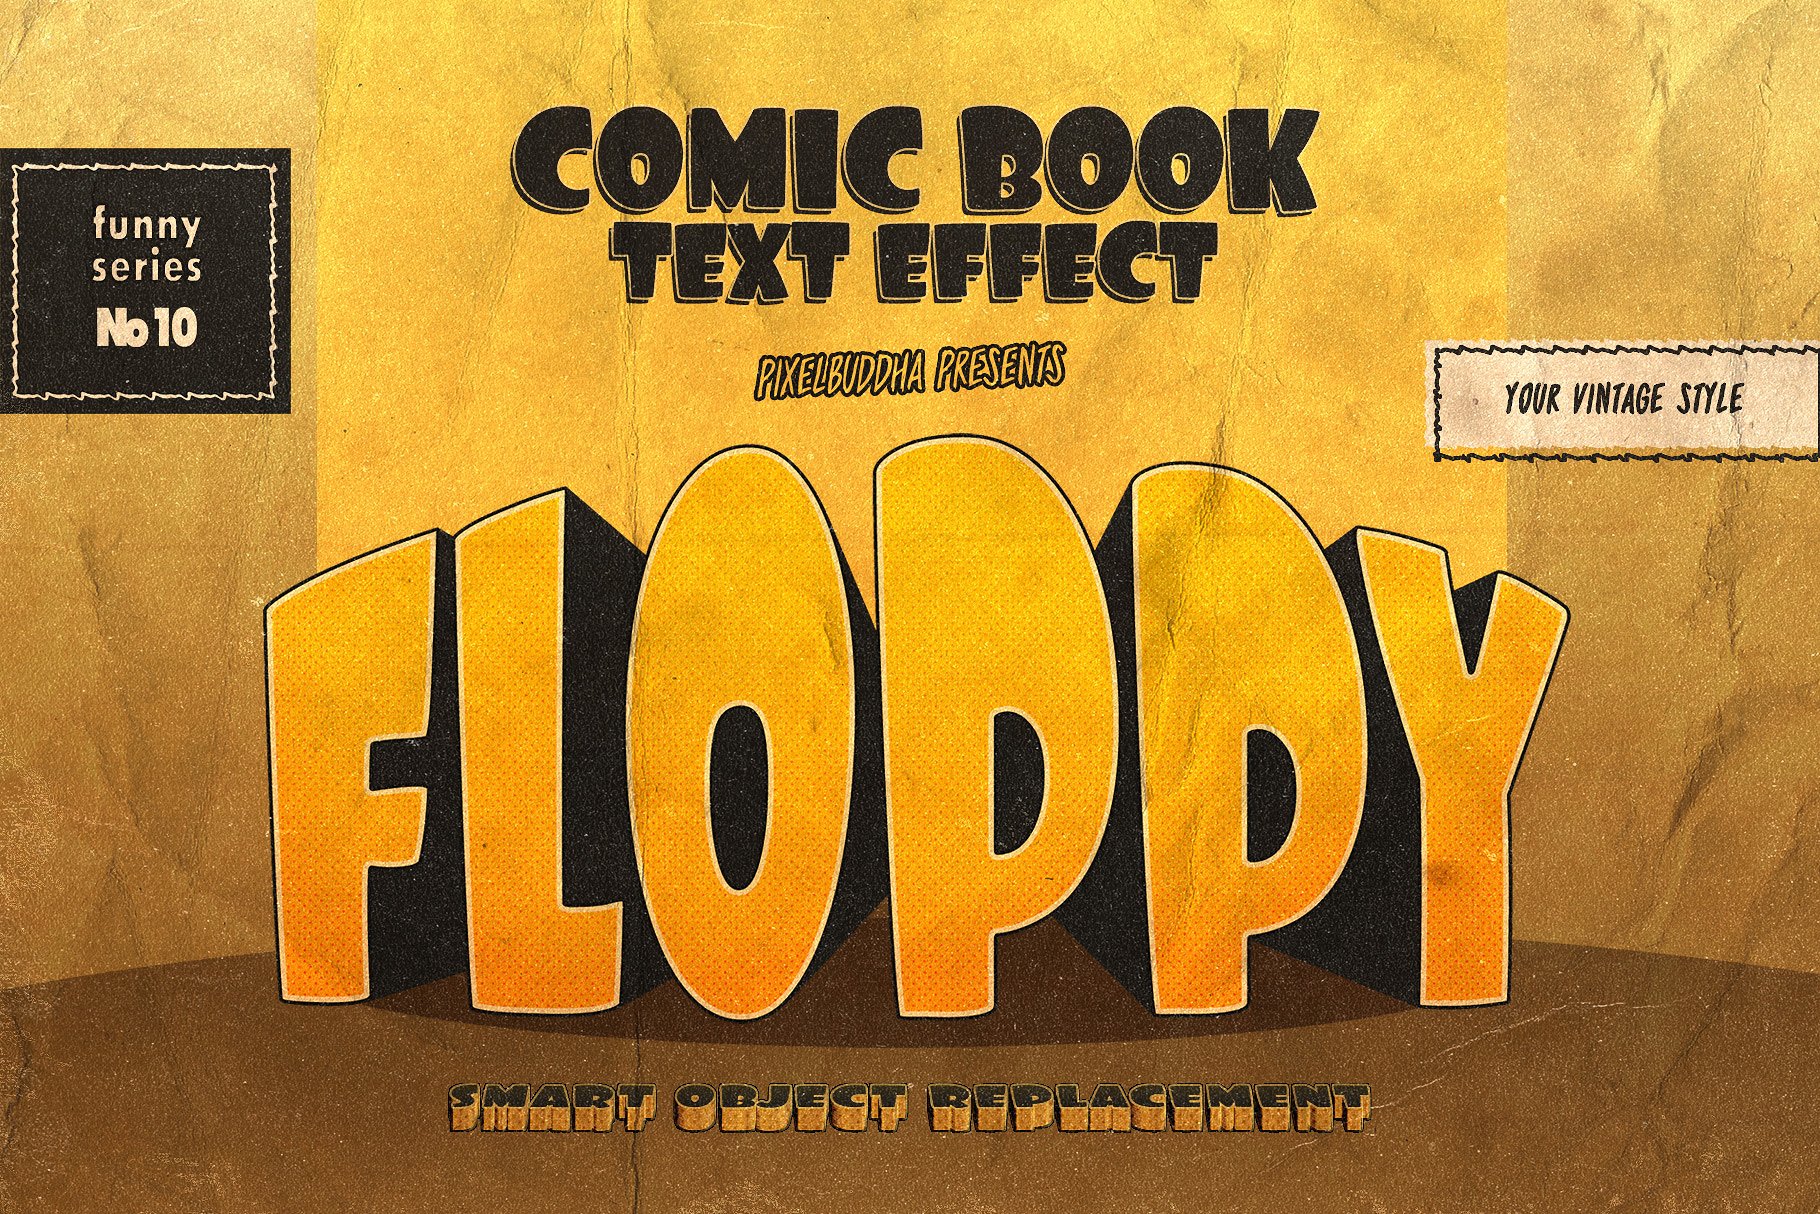 复古的手绘3D立体文字效果图层样式 Vintage Comics Text Effects插图10